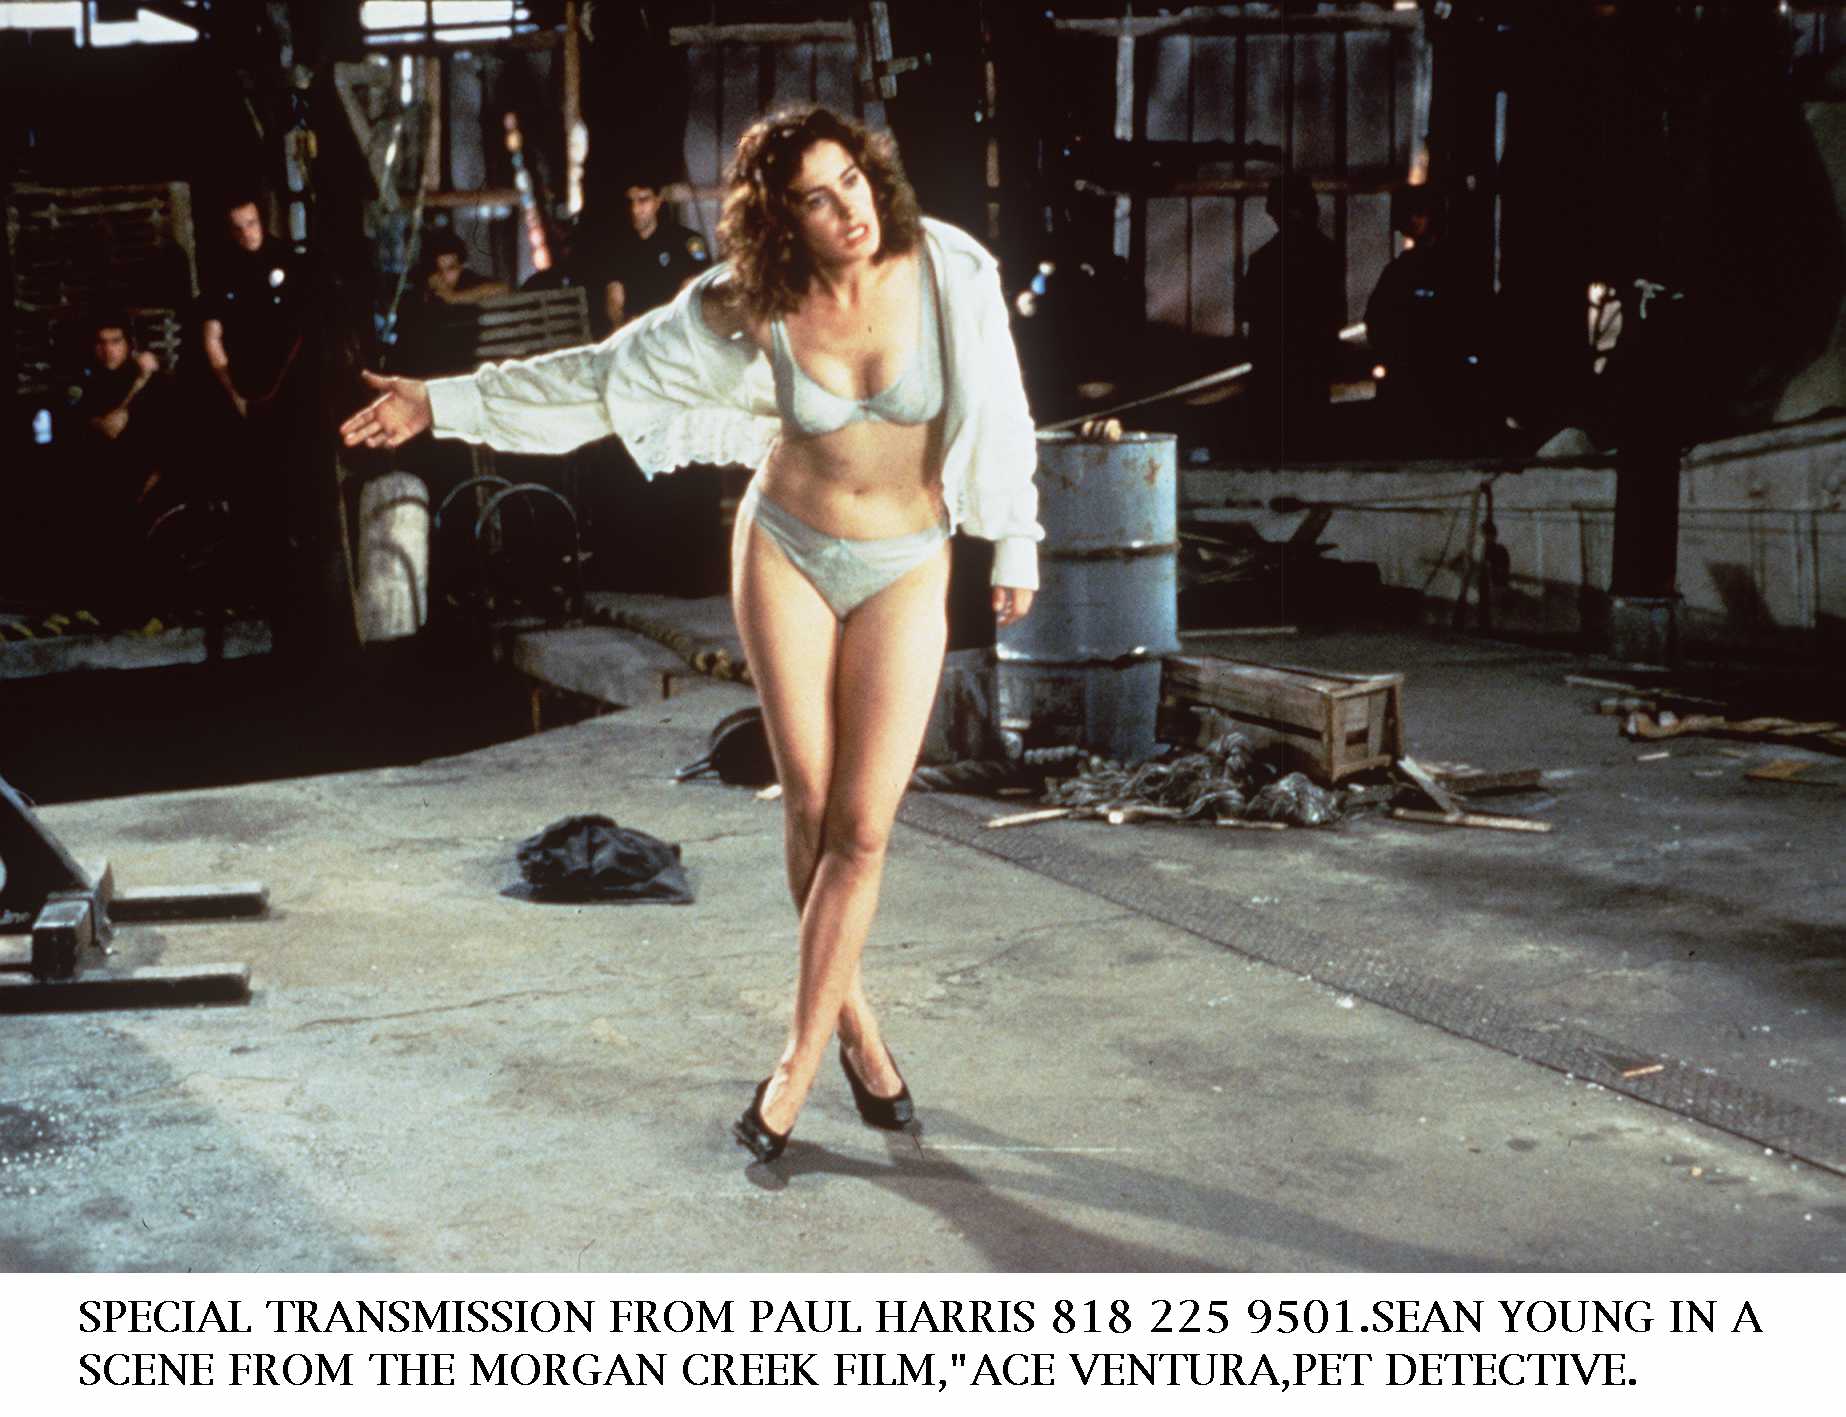 Ace Ventura star Sean Young as Einhorn in her underwear